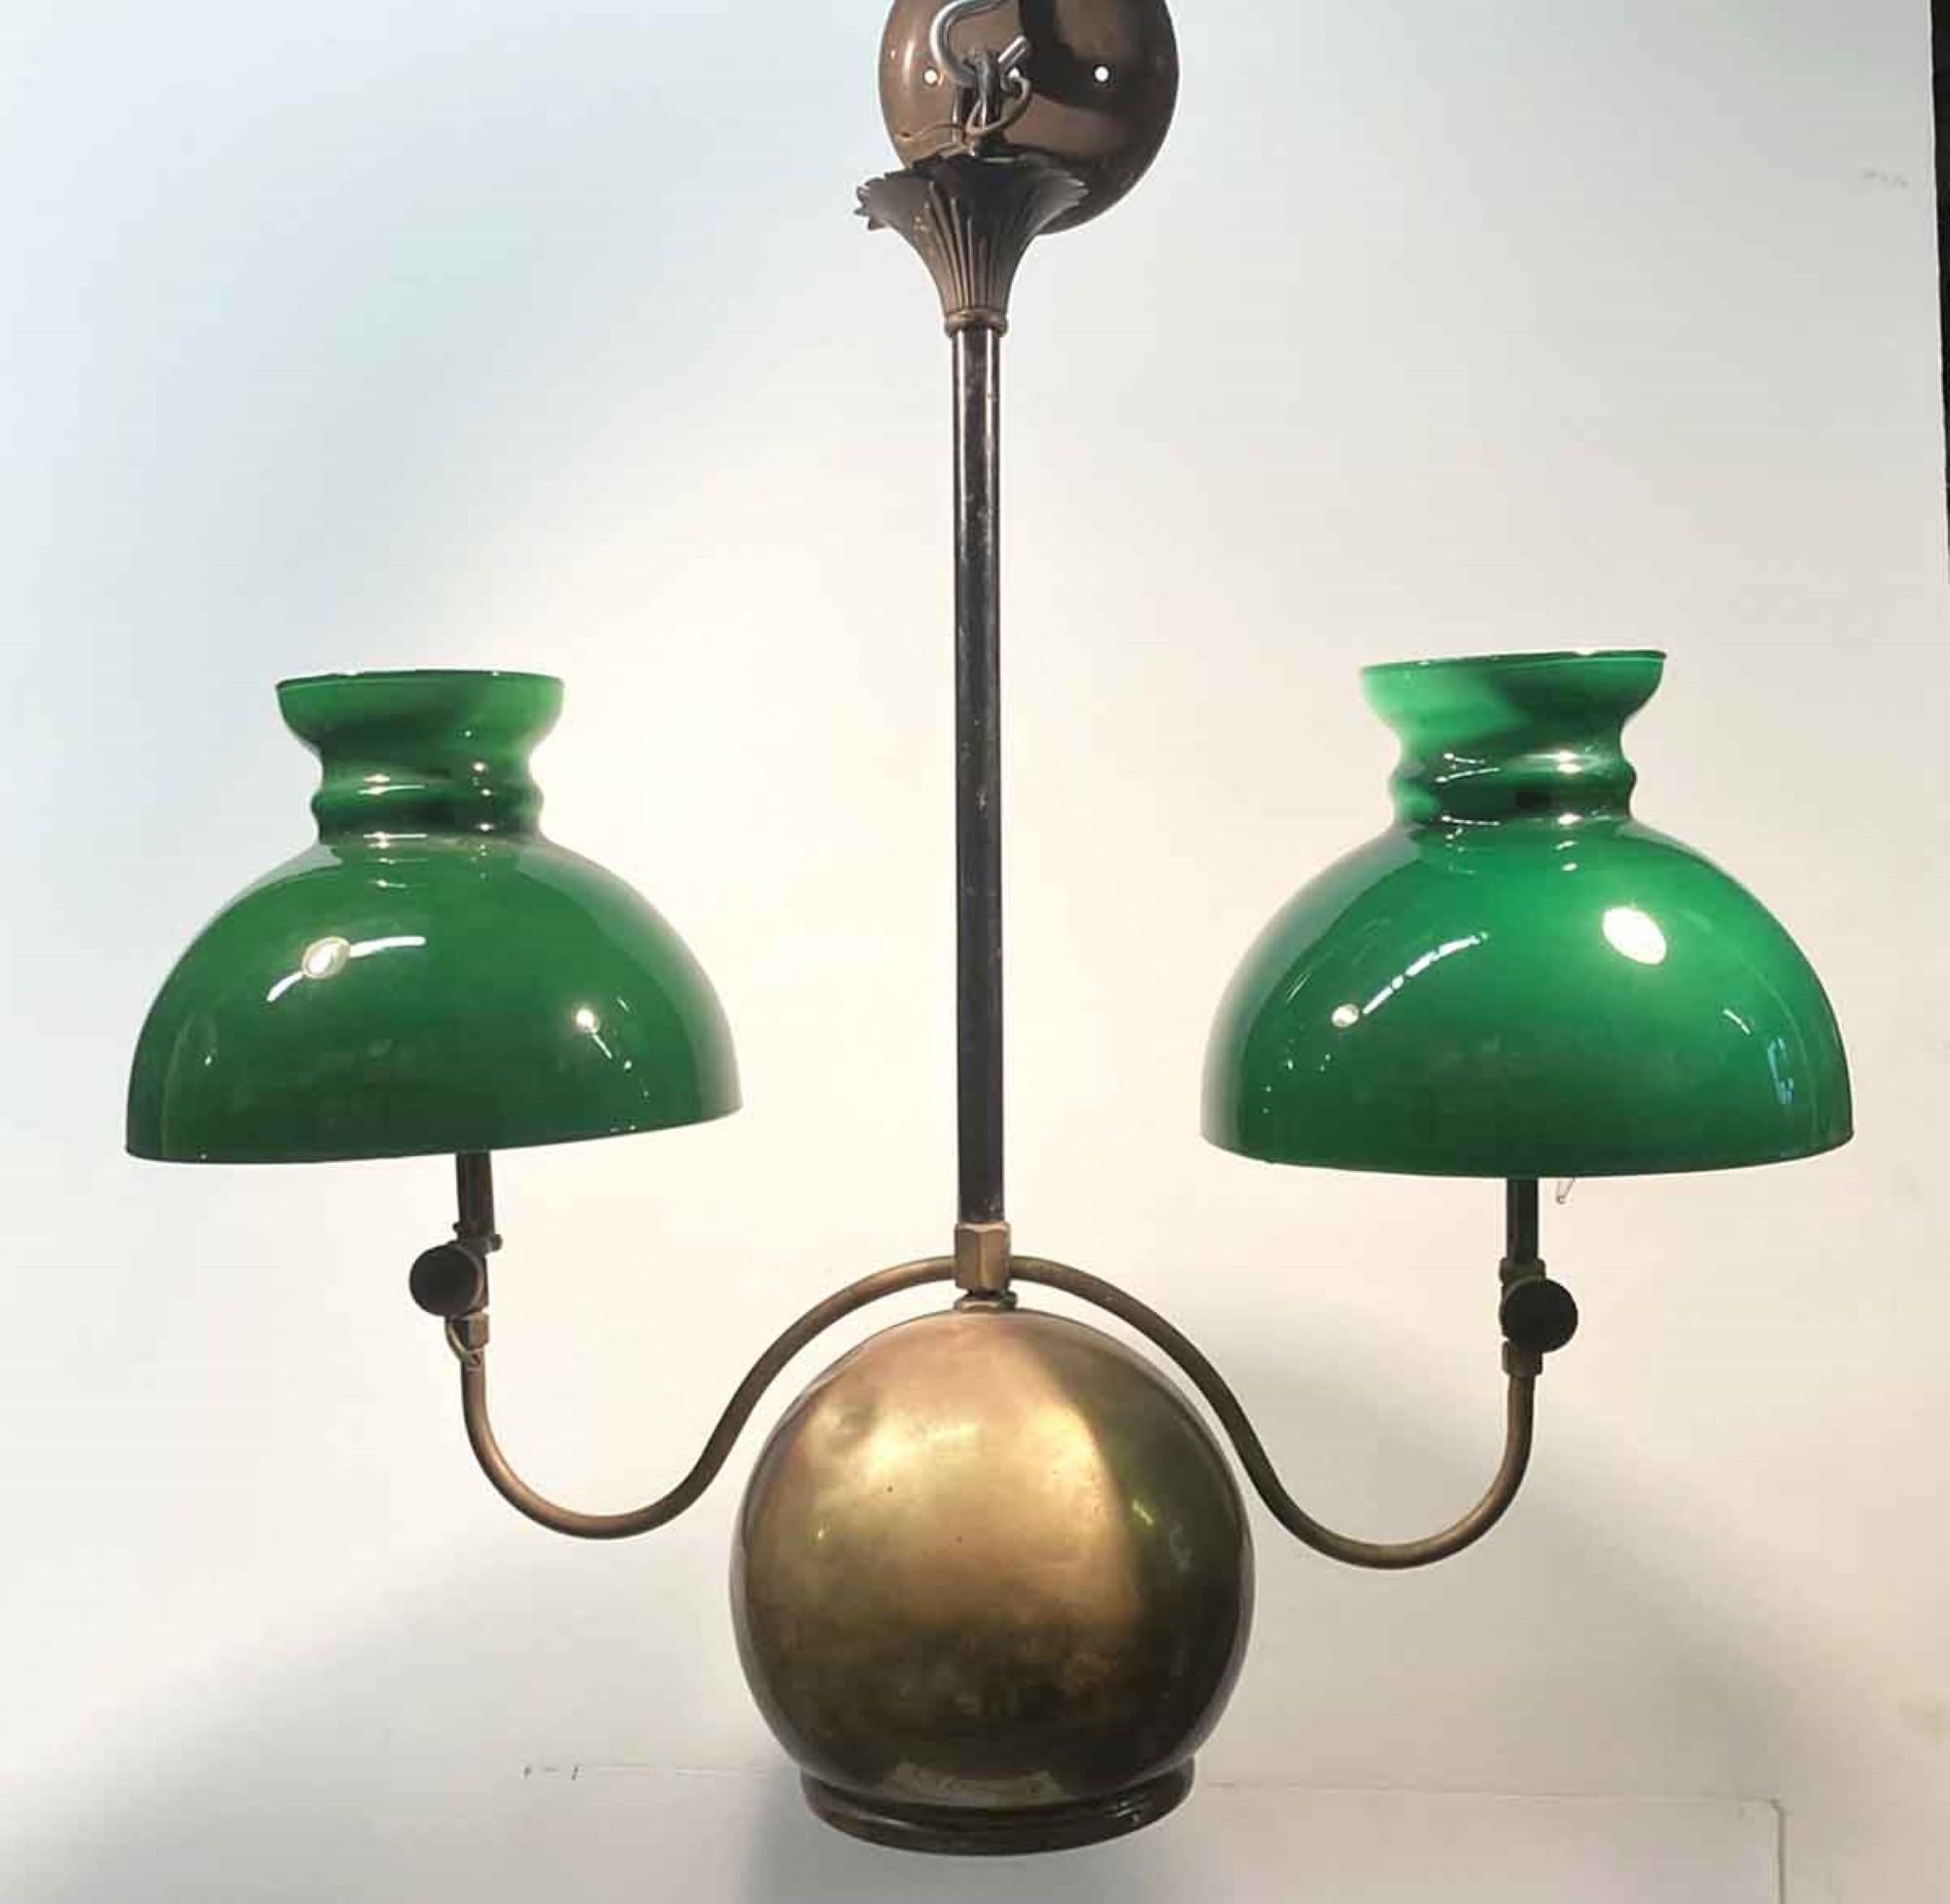 Doppelflammige Öllaterne aus Messing und grünem Glas mit Walmotiv, 1880er Jahre (Industriell)